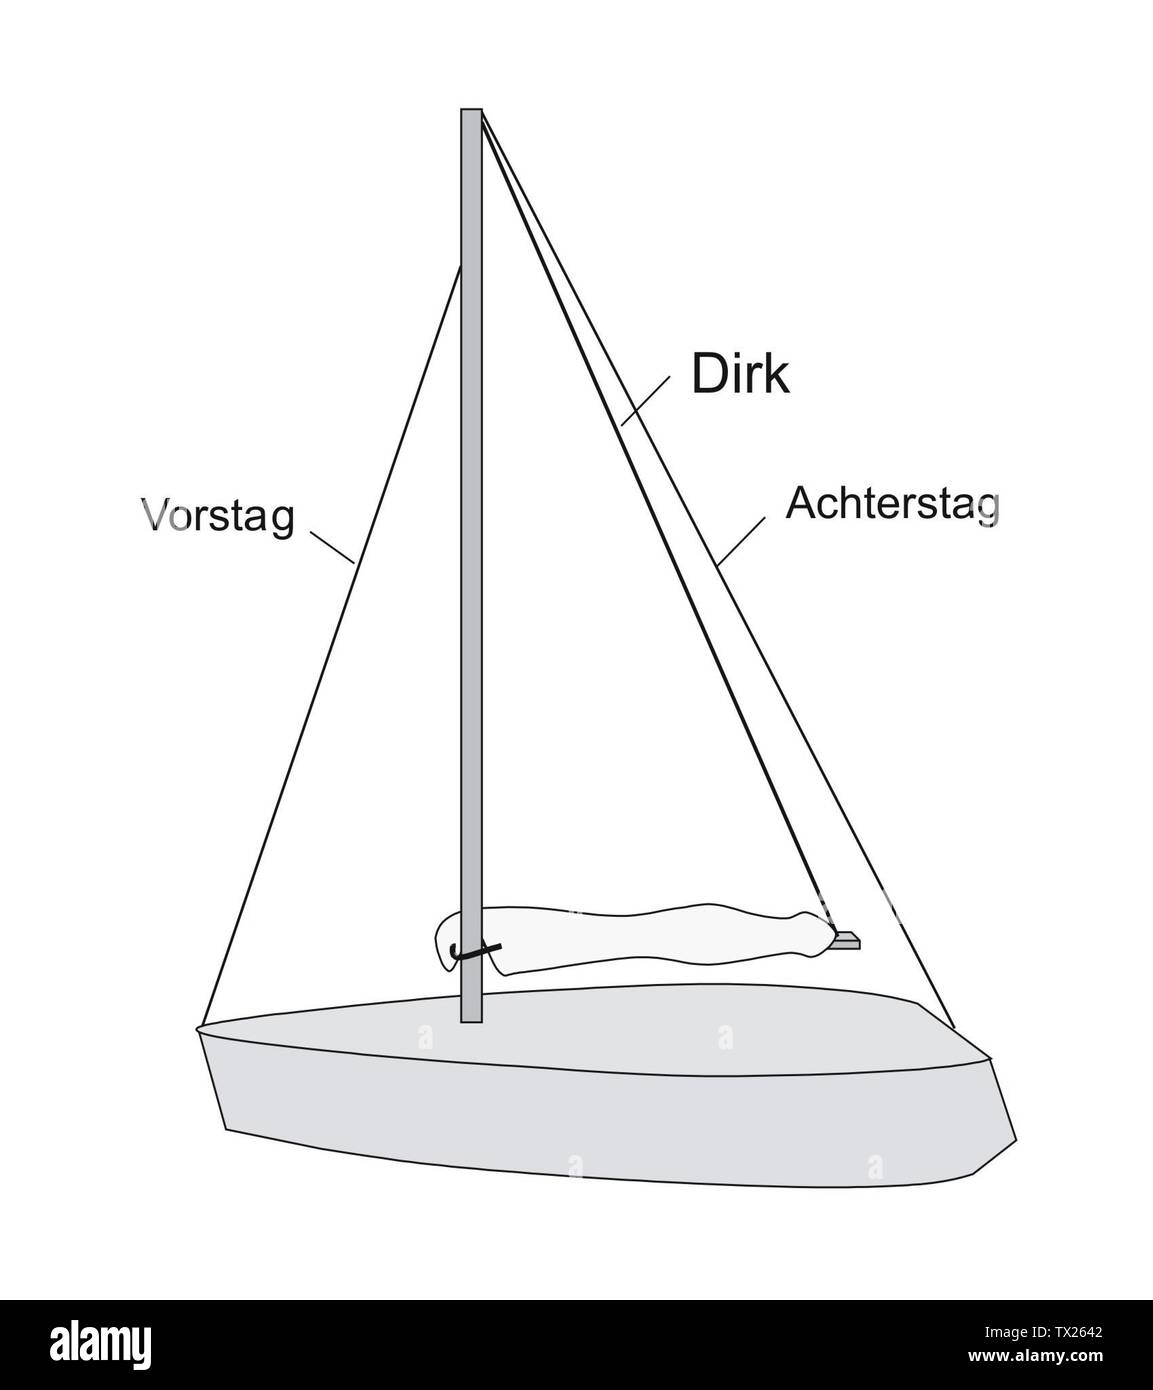 Dirk eines Segelschiffes; 20 August 2007; Own work (Original text:  eigene Zeichnung); Schorschi2; Stock Photo